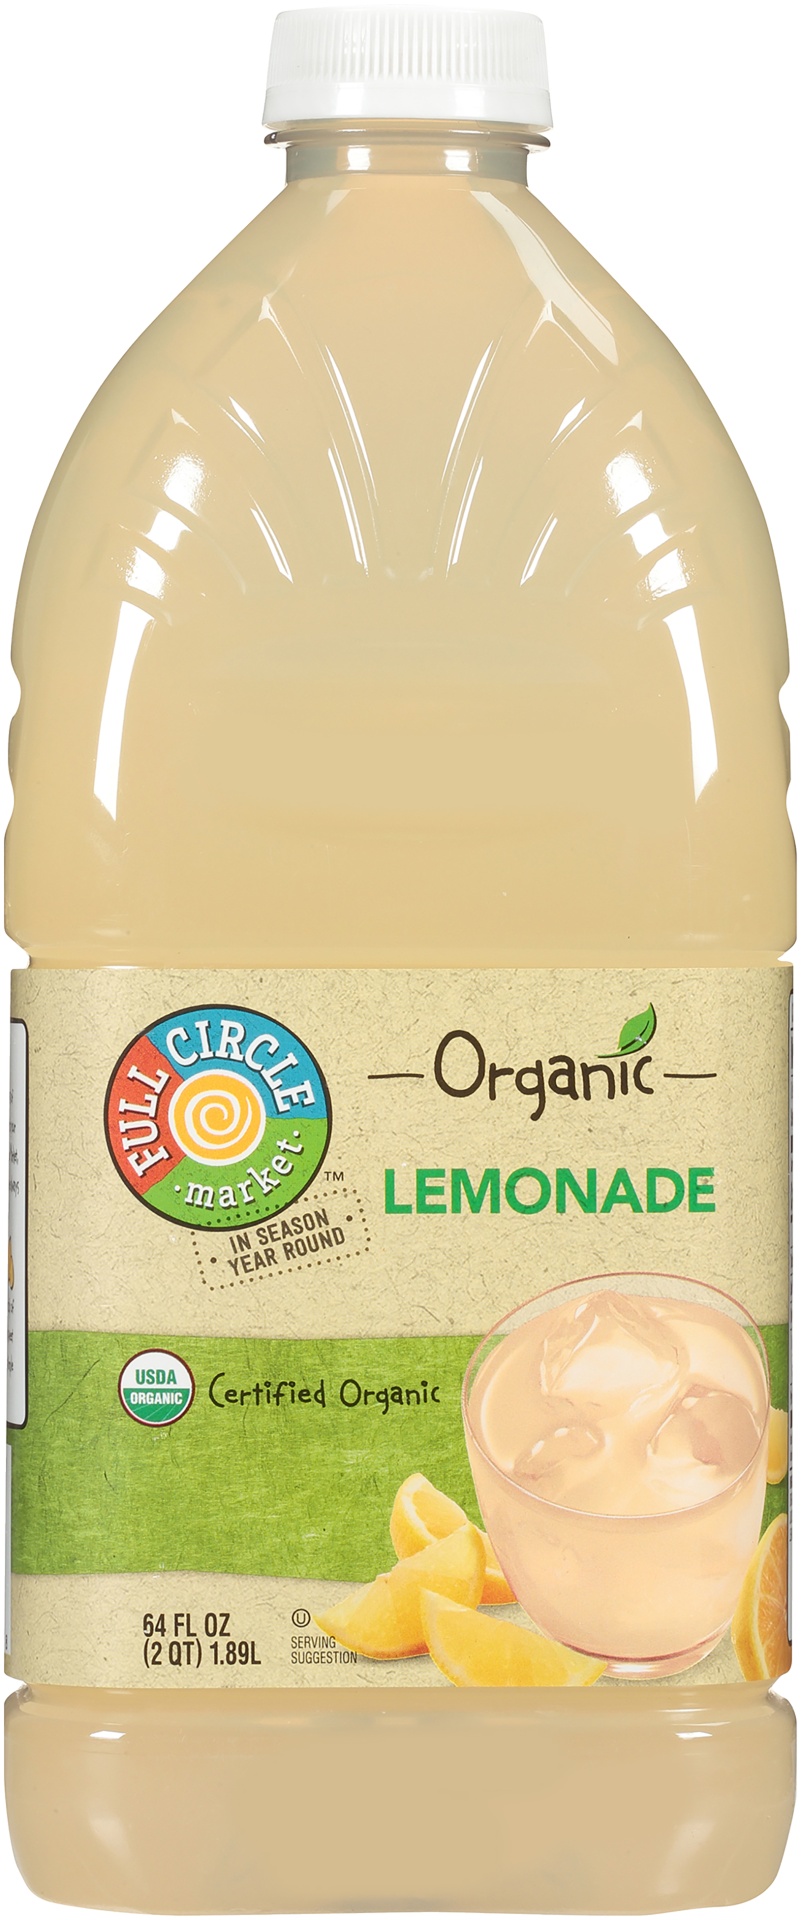 slide 1 of 1, Full Circle Market Organic Lemonade, 64 fl oz